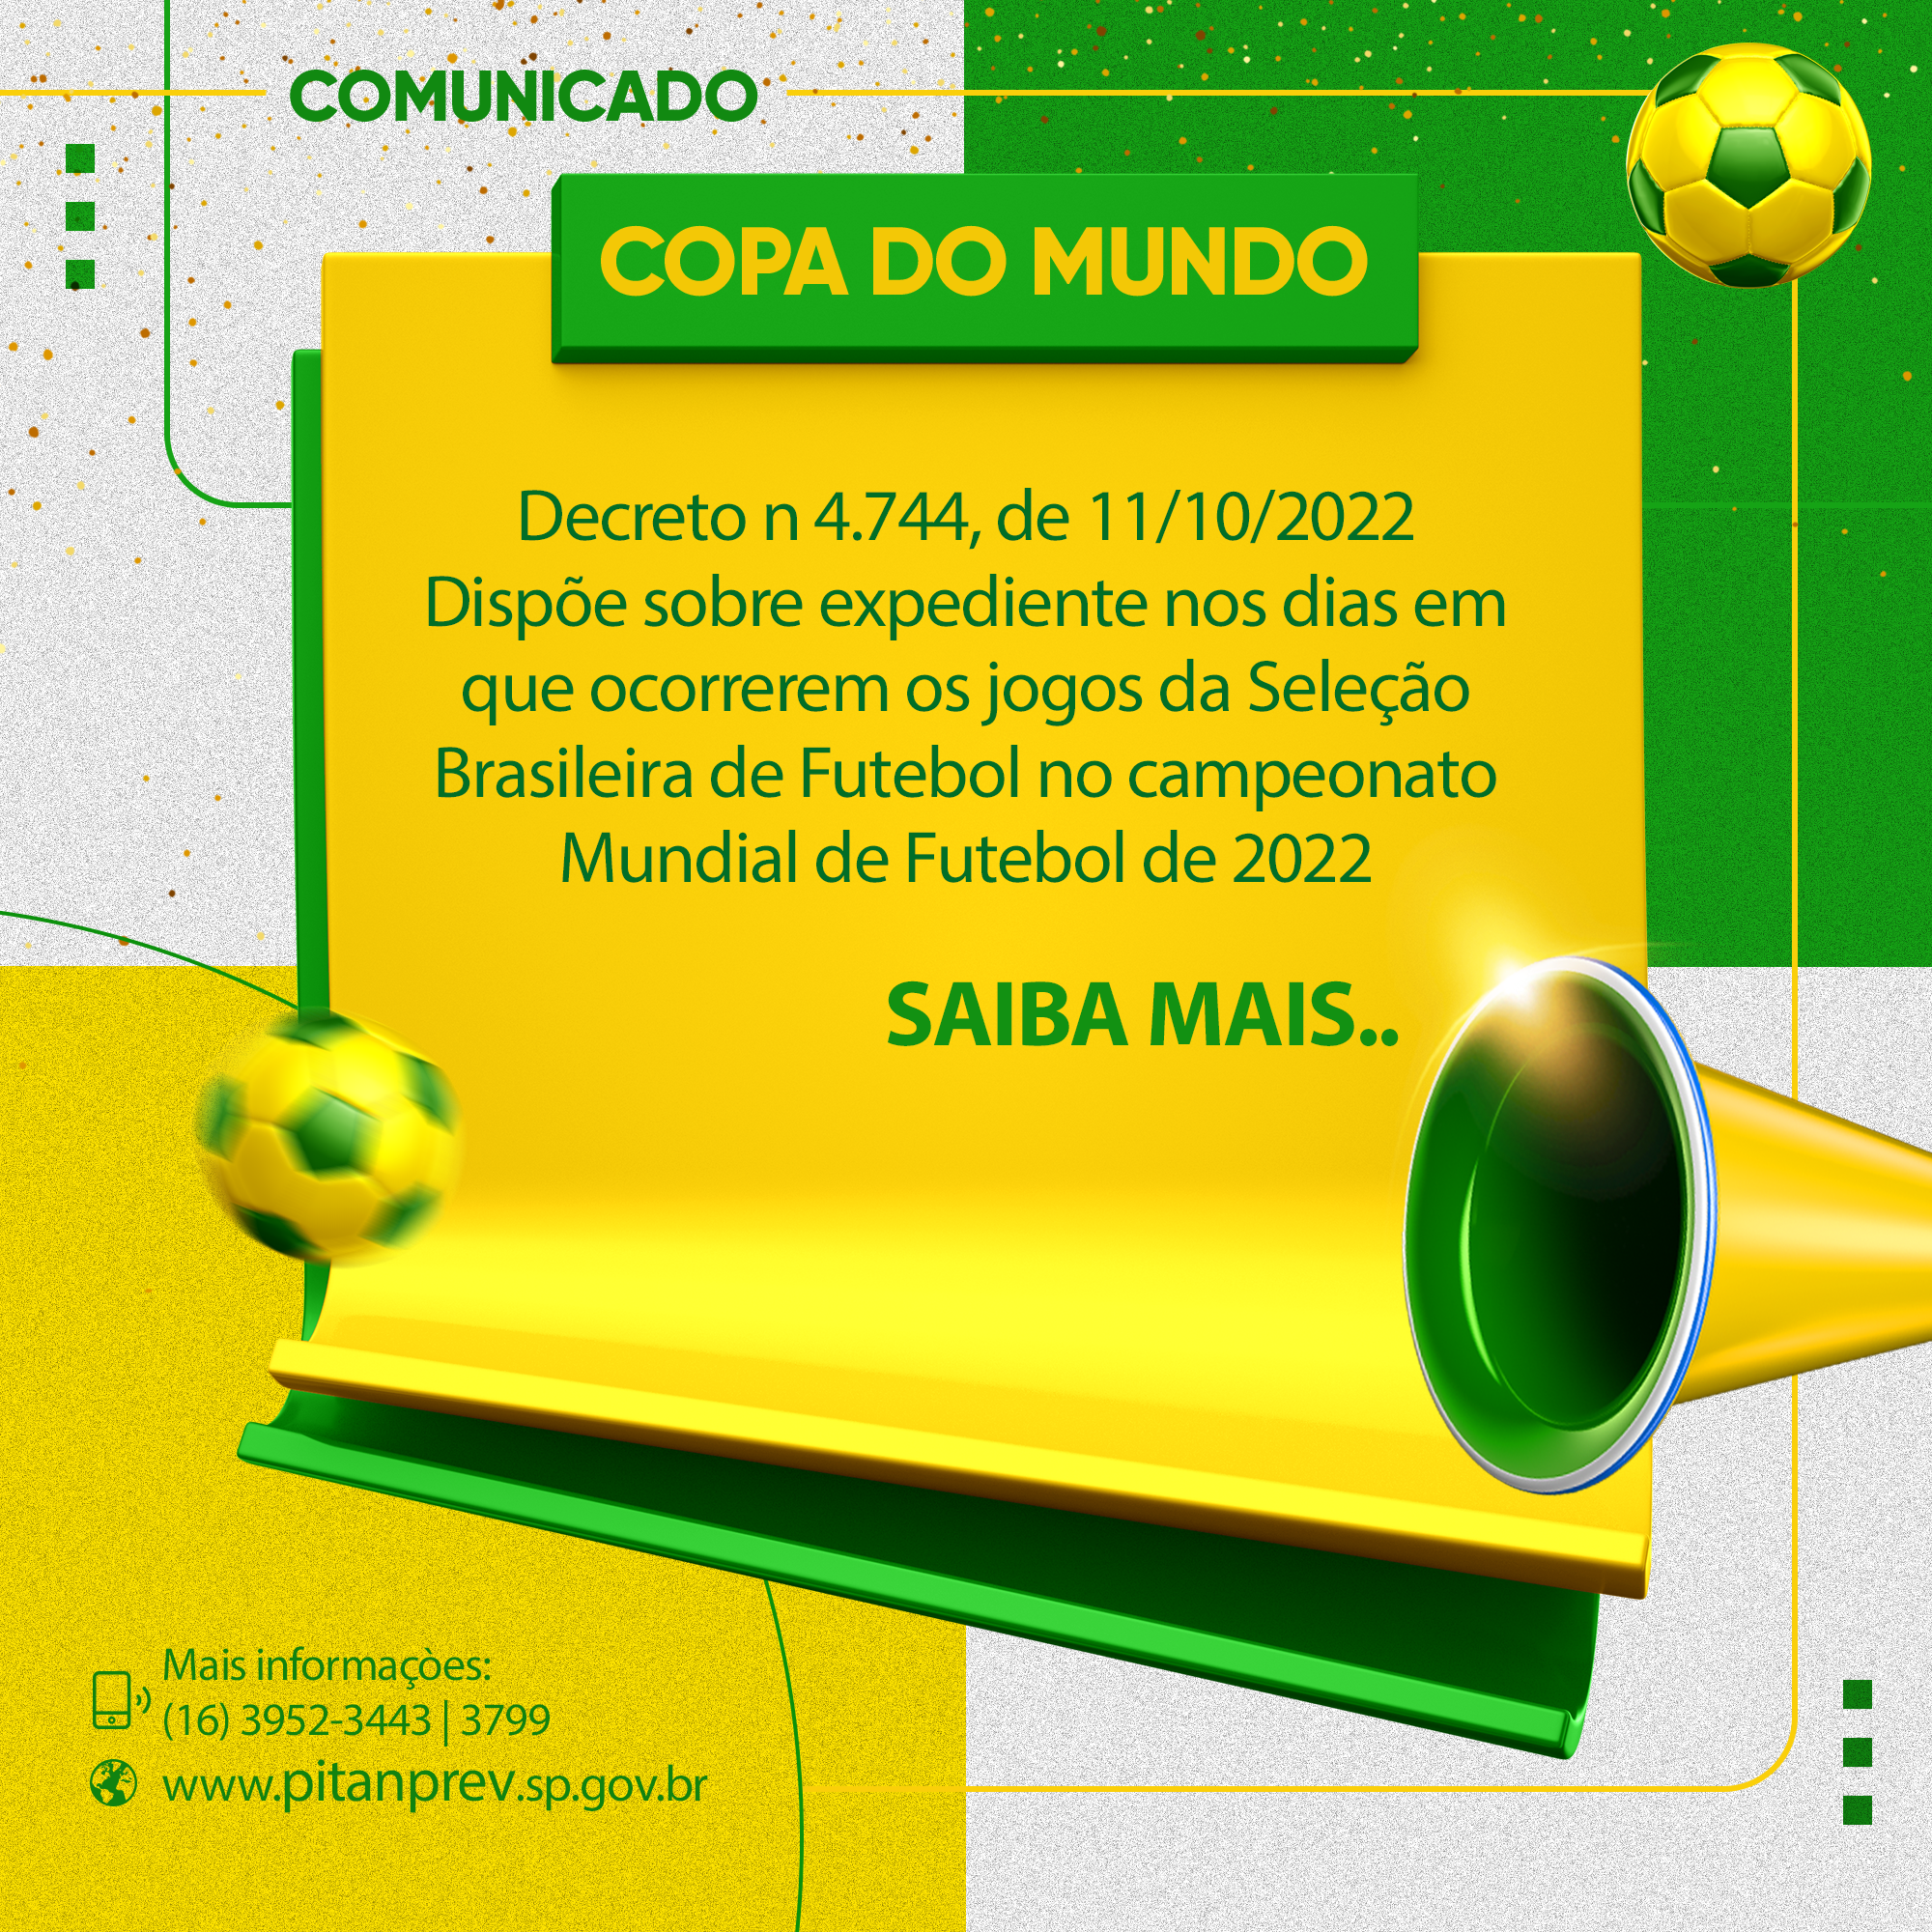 Seleção vai fazer dois jogos de amarelo e um de azul na primeira fase da  Copa do Mundo, seleção brasileira